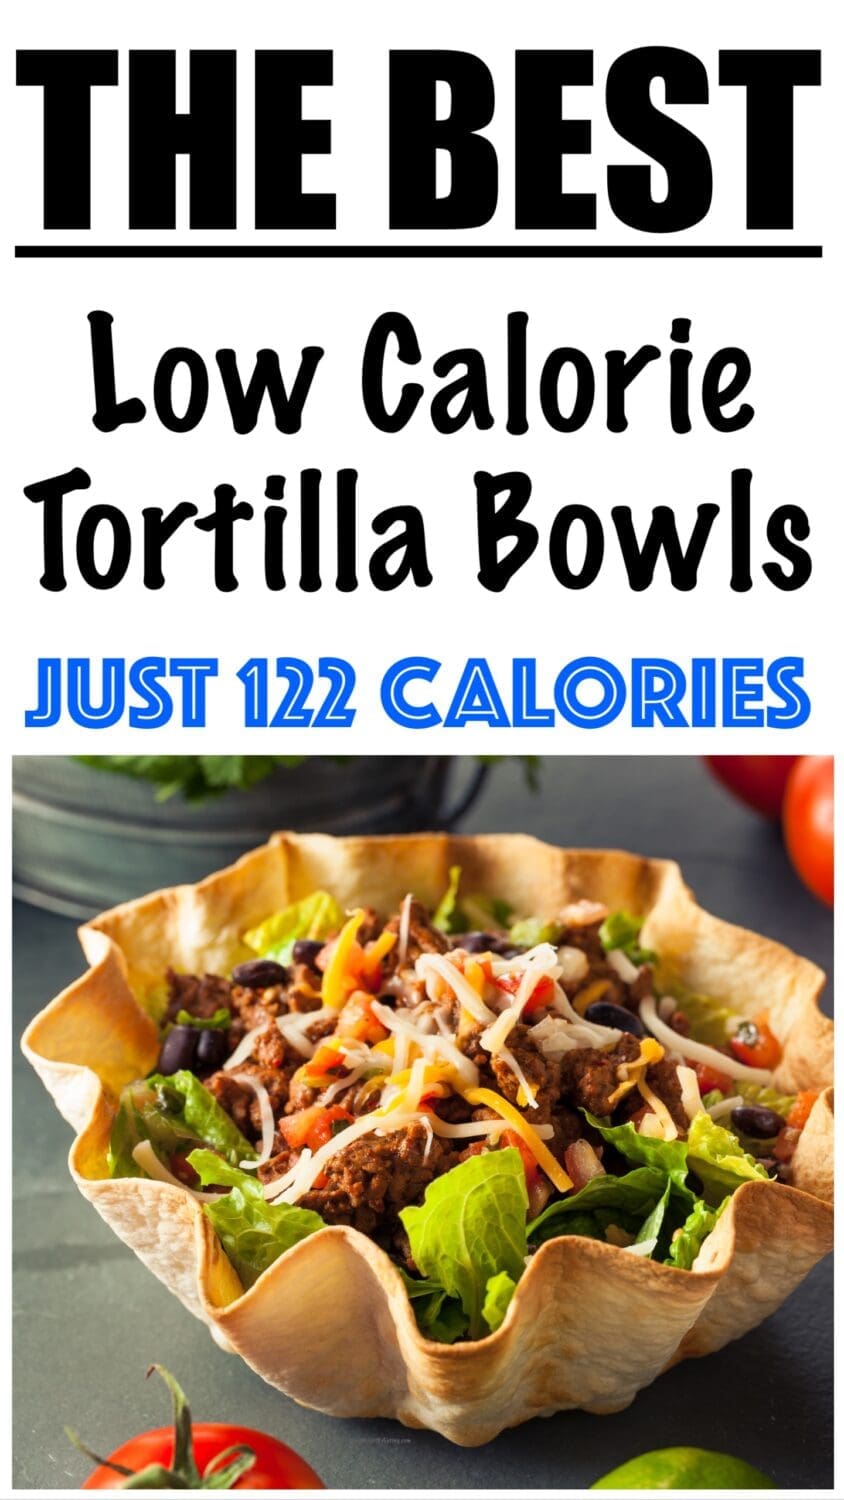 Low Calorie Tortilla Bowls